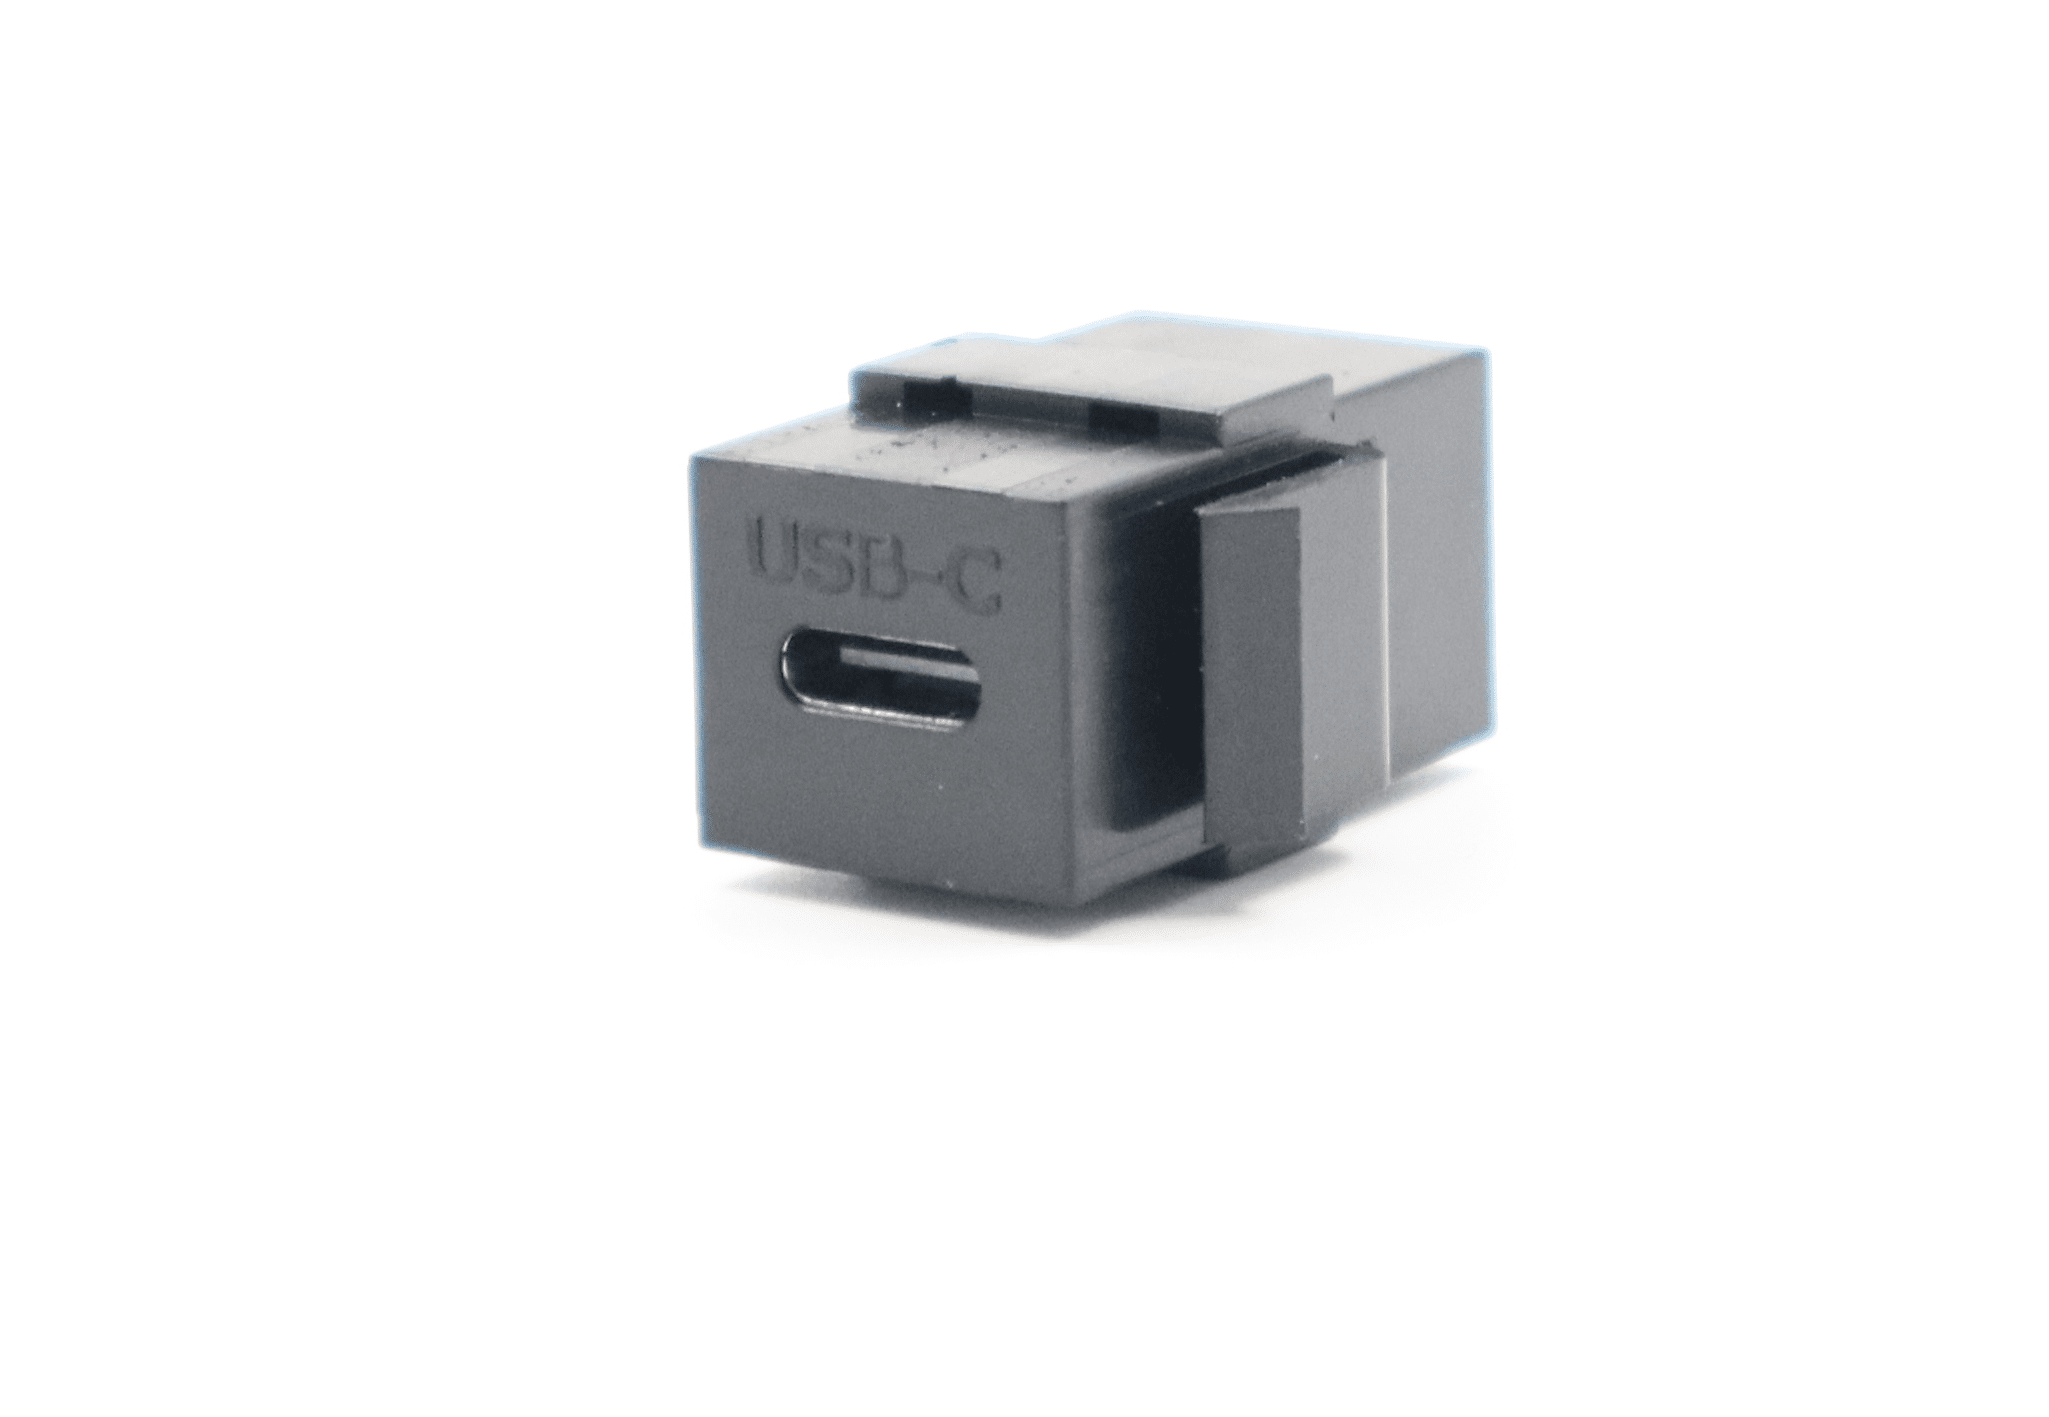 ZŁĄCZE USB C 3.1 KEYSTONE CZARNE (Zdjęcie 1)